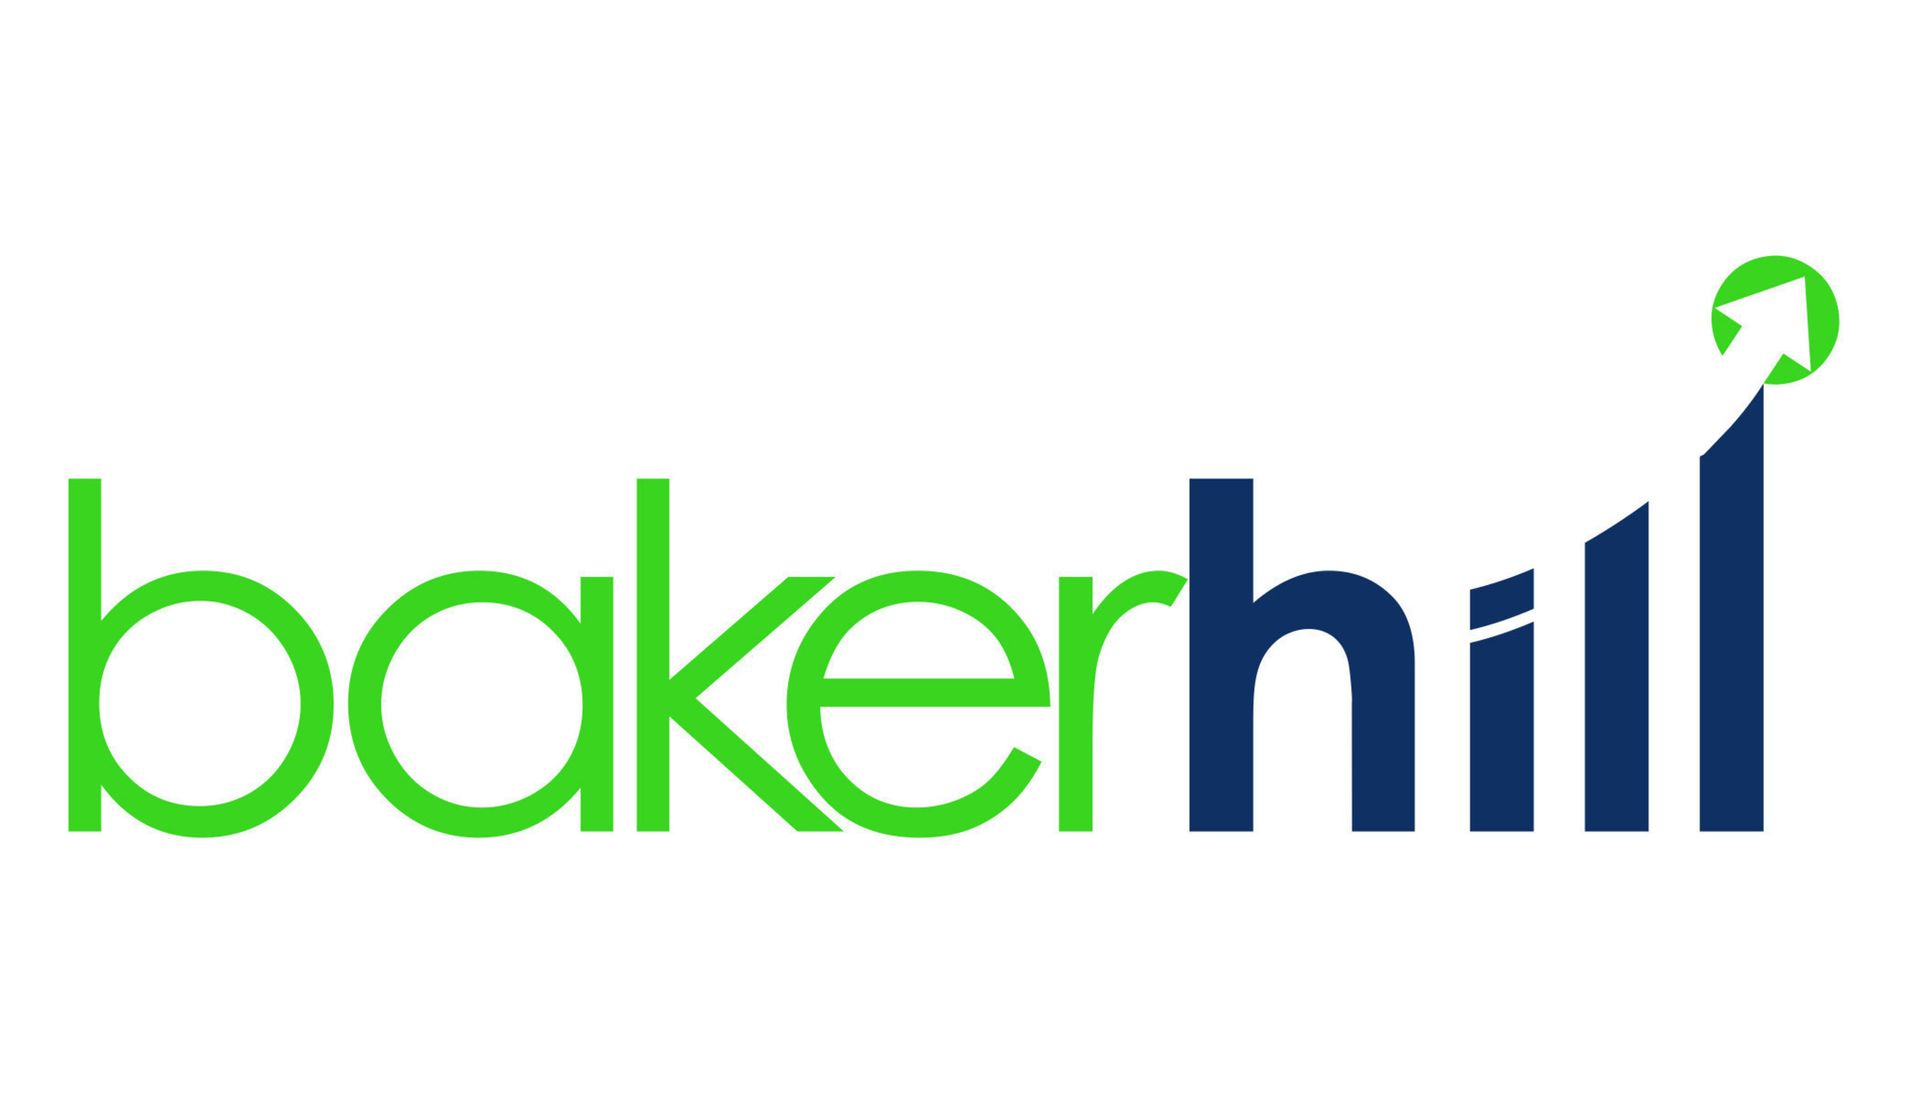 Baker Hill logo